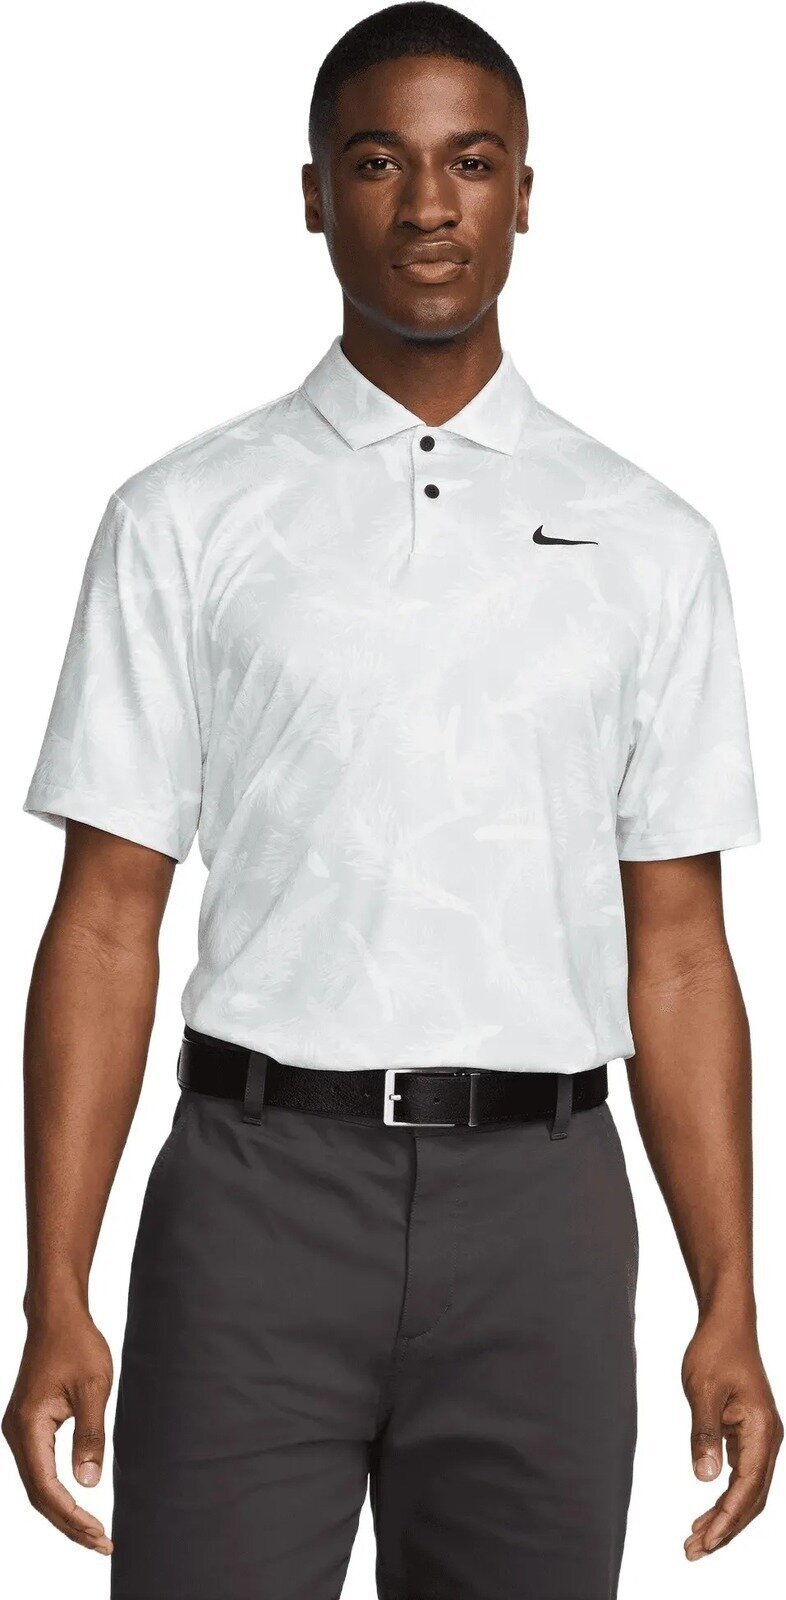 Camiseta polo Nike Dri-Fit Tour Pine Print Mens Polo Summit White/Black S Camiseta polo